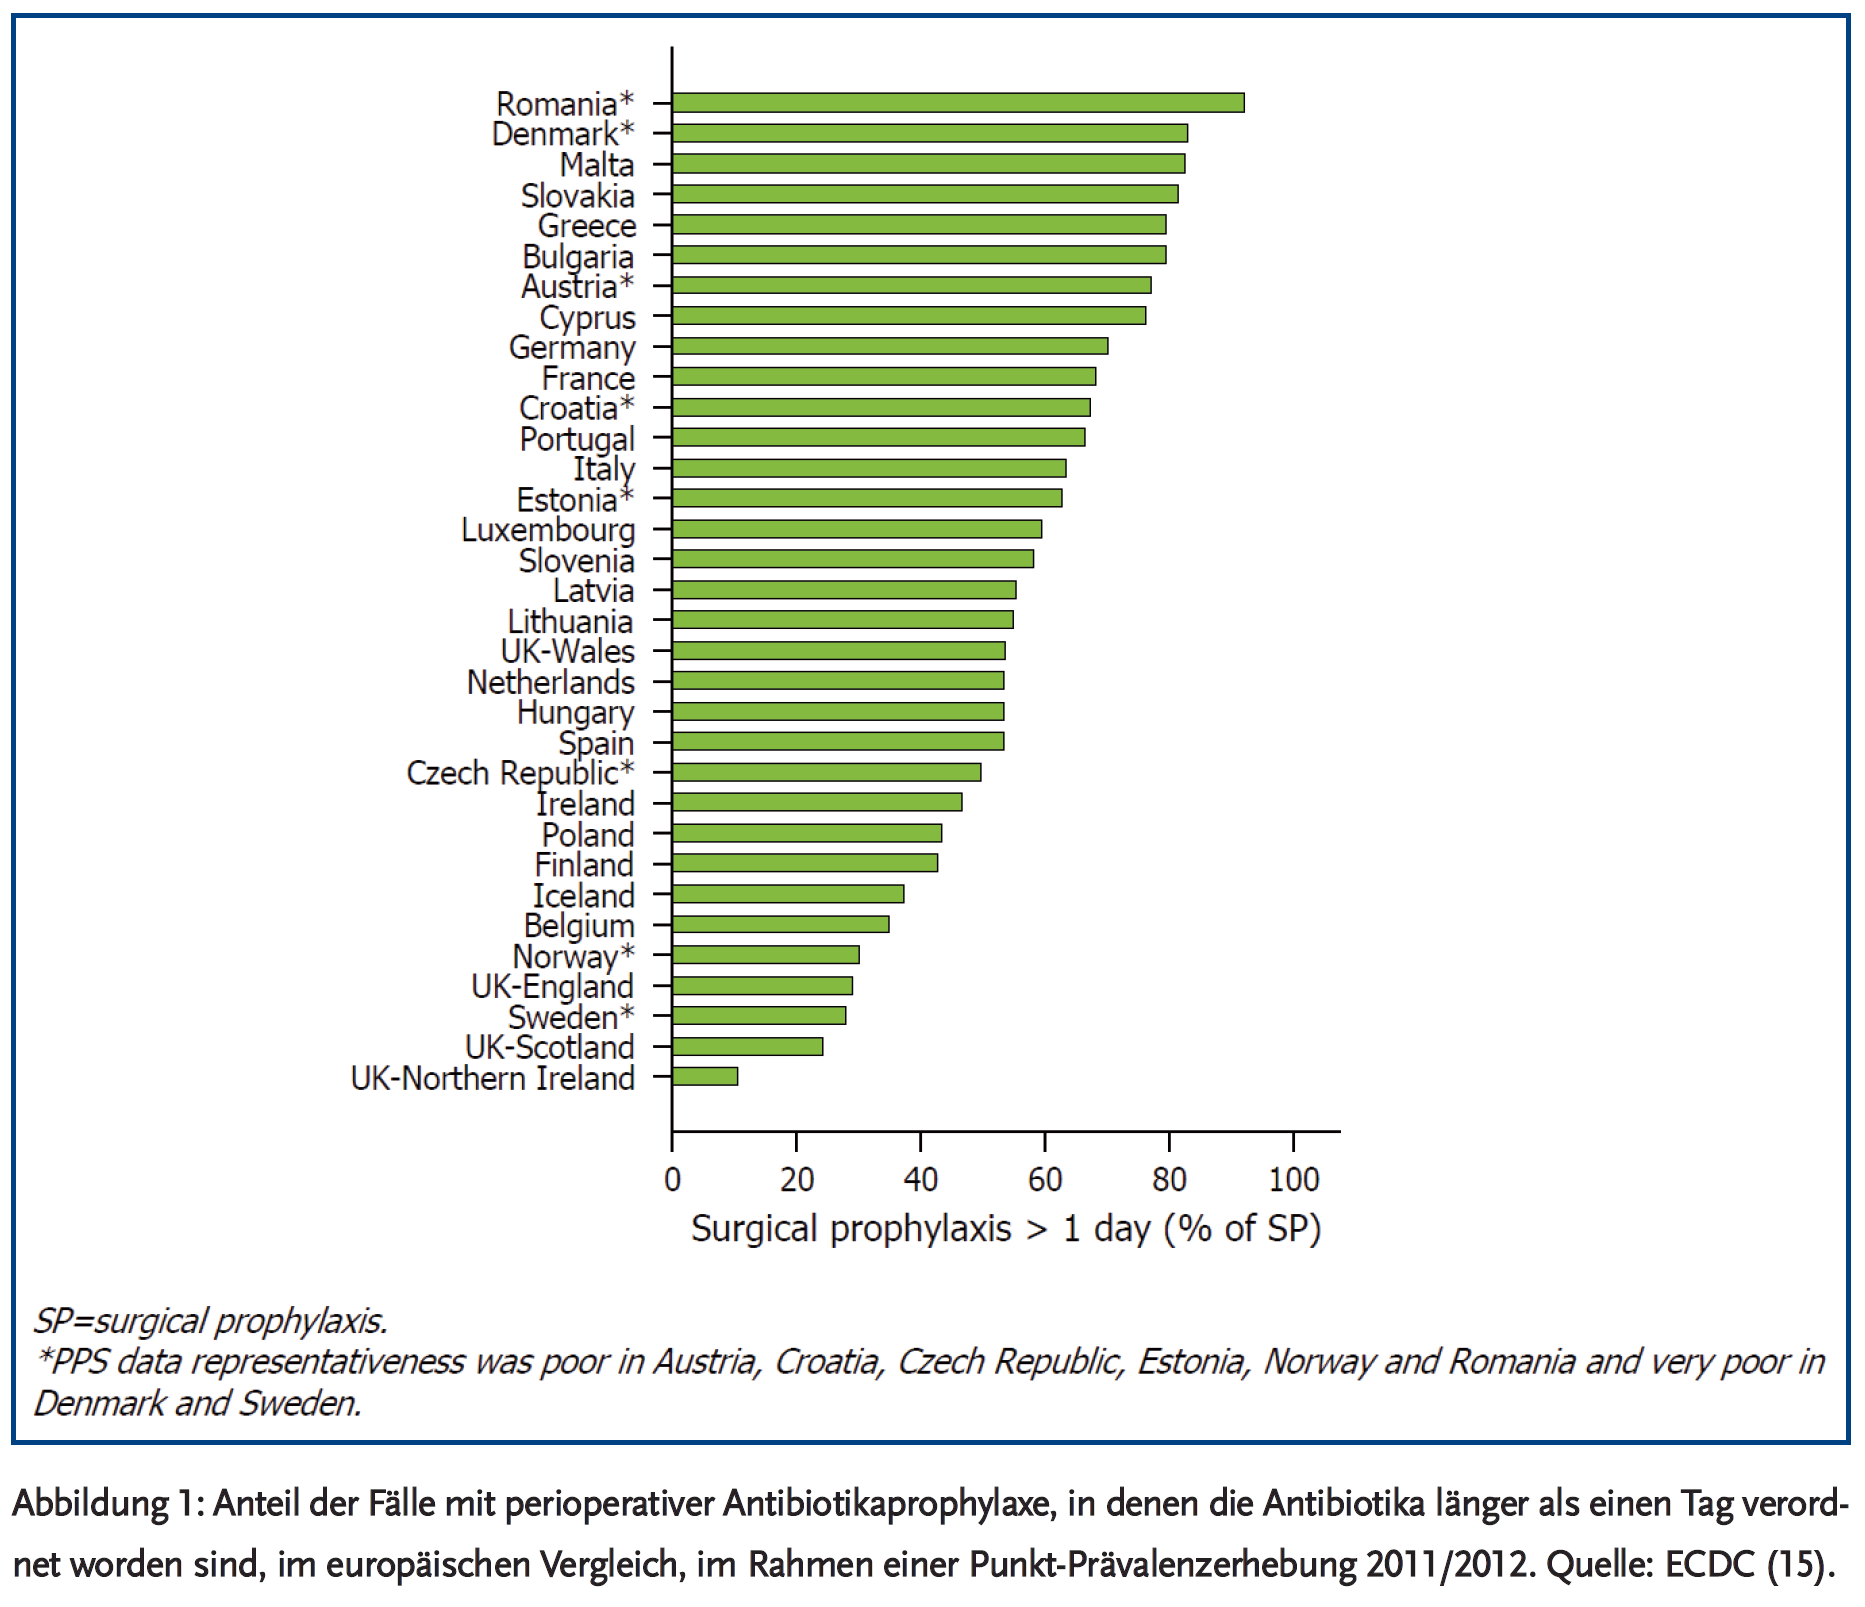 Abbildung 1: Anteil der Fälle mit perioperativer Antibiotikaprophylaxe, in denen die Antibiotika länger als einen Tag verordnet worden sind, im europäischen Vergleich, im Rahmen einer Punkt-Prävalenzerhebung 2011/2012.